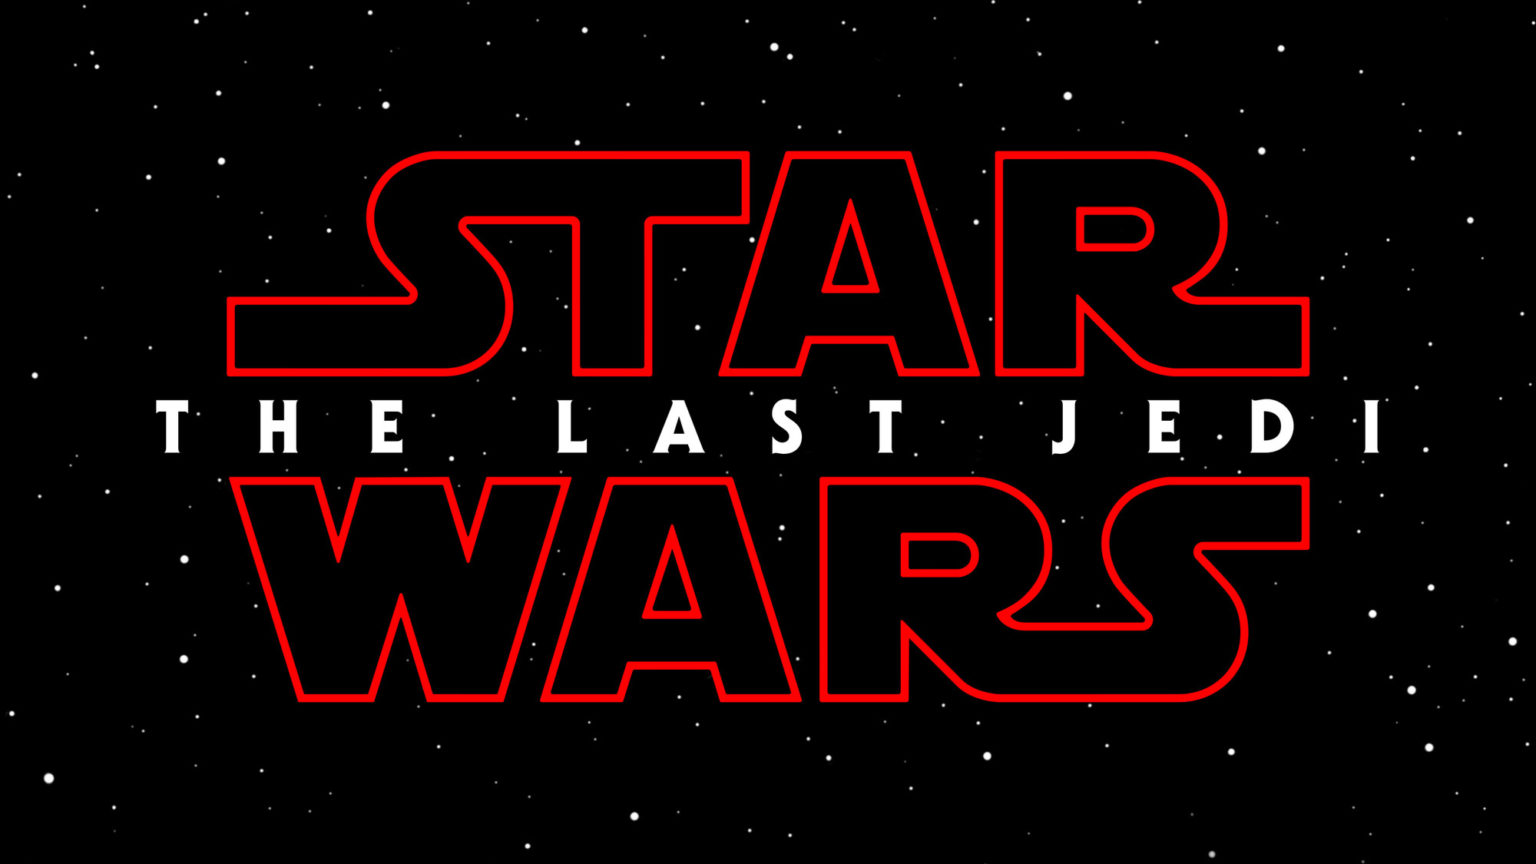 Star Wars: The Last Jedi será el título oficial de la próxima película de la saga (Episodio VIII)